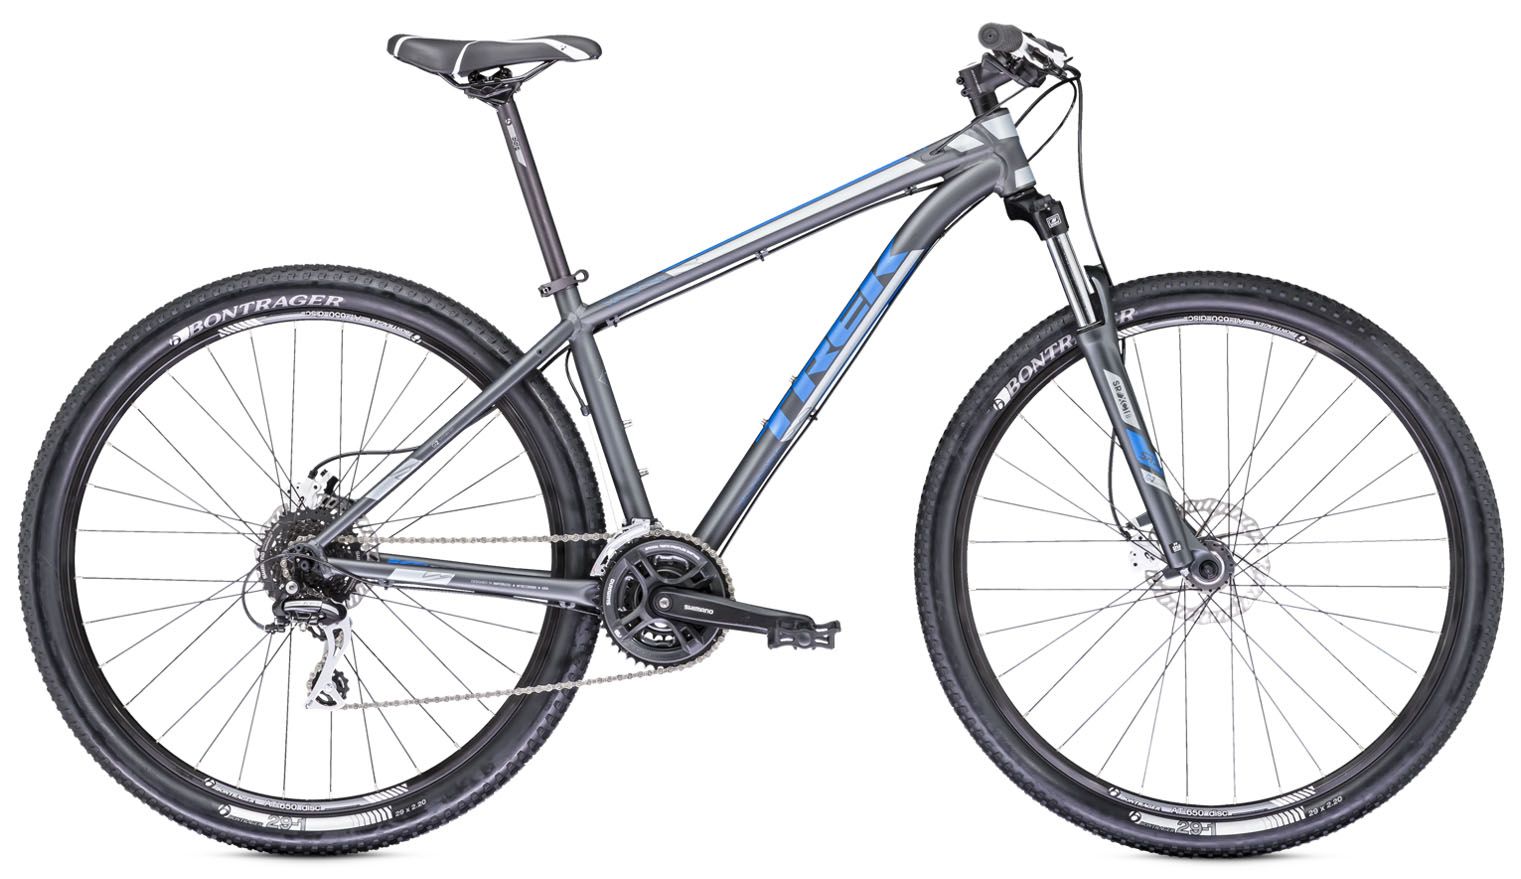  Отзывы о Горном велосипеде Trek X-Caliber 5 2013